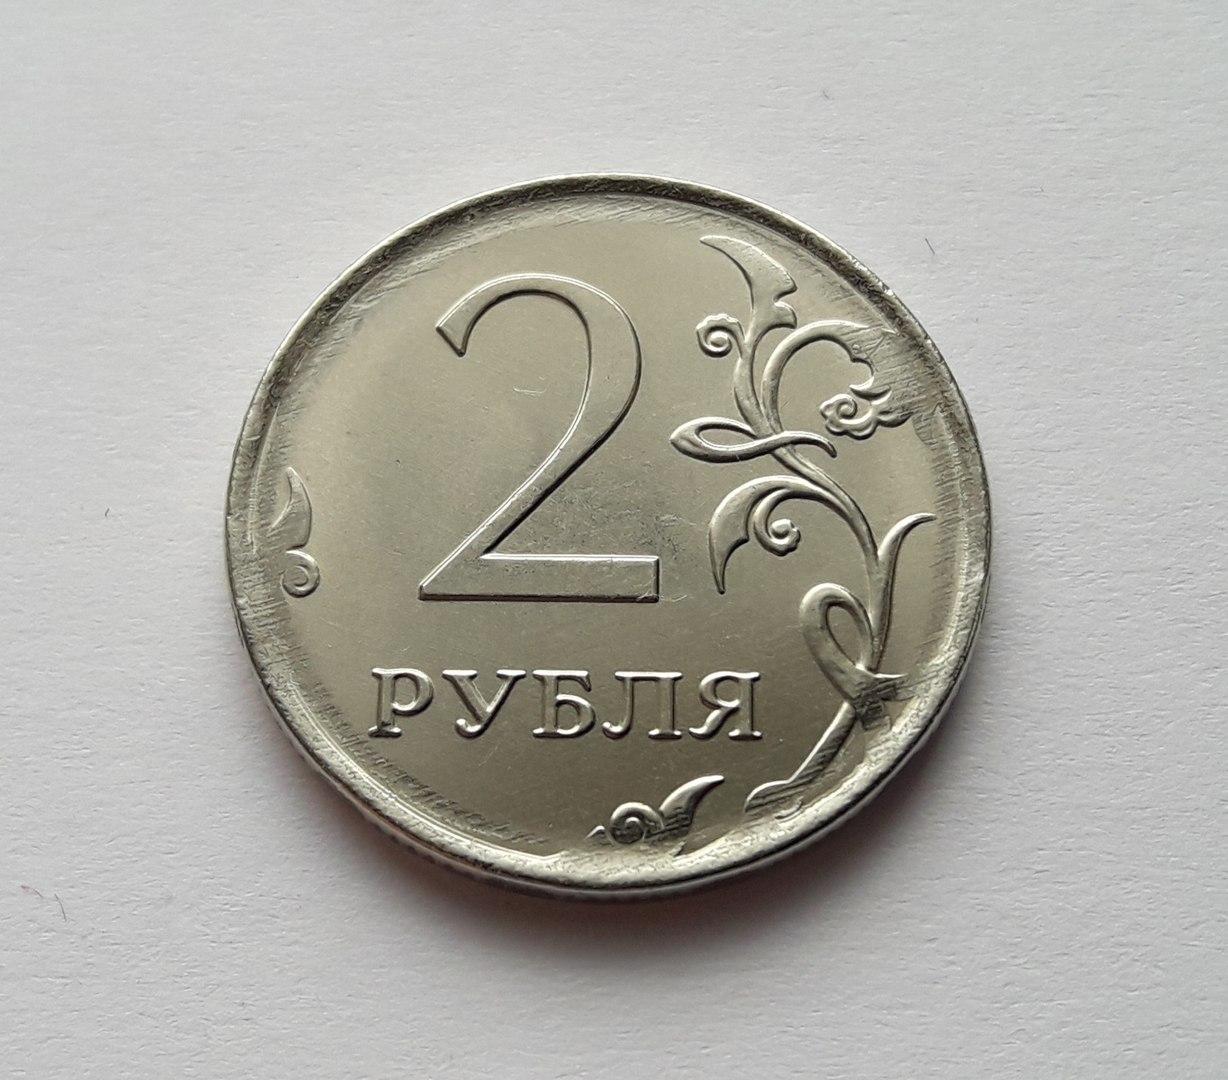 Ба рубль. Монета 2 рубля. 2 Рубля 1997 Аверс-Аверс. 2 Рубля 2007 Аверс-Аверс. Монеты 1 и 2 рубля.